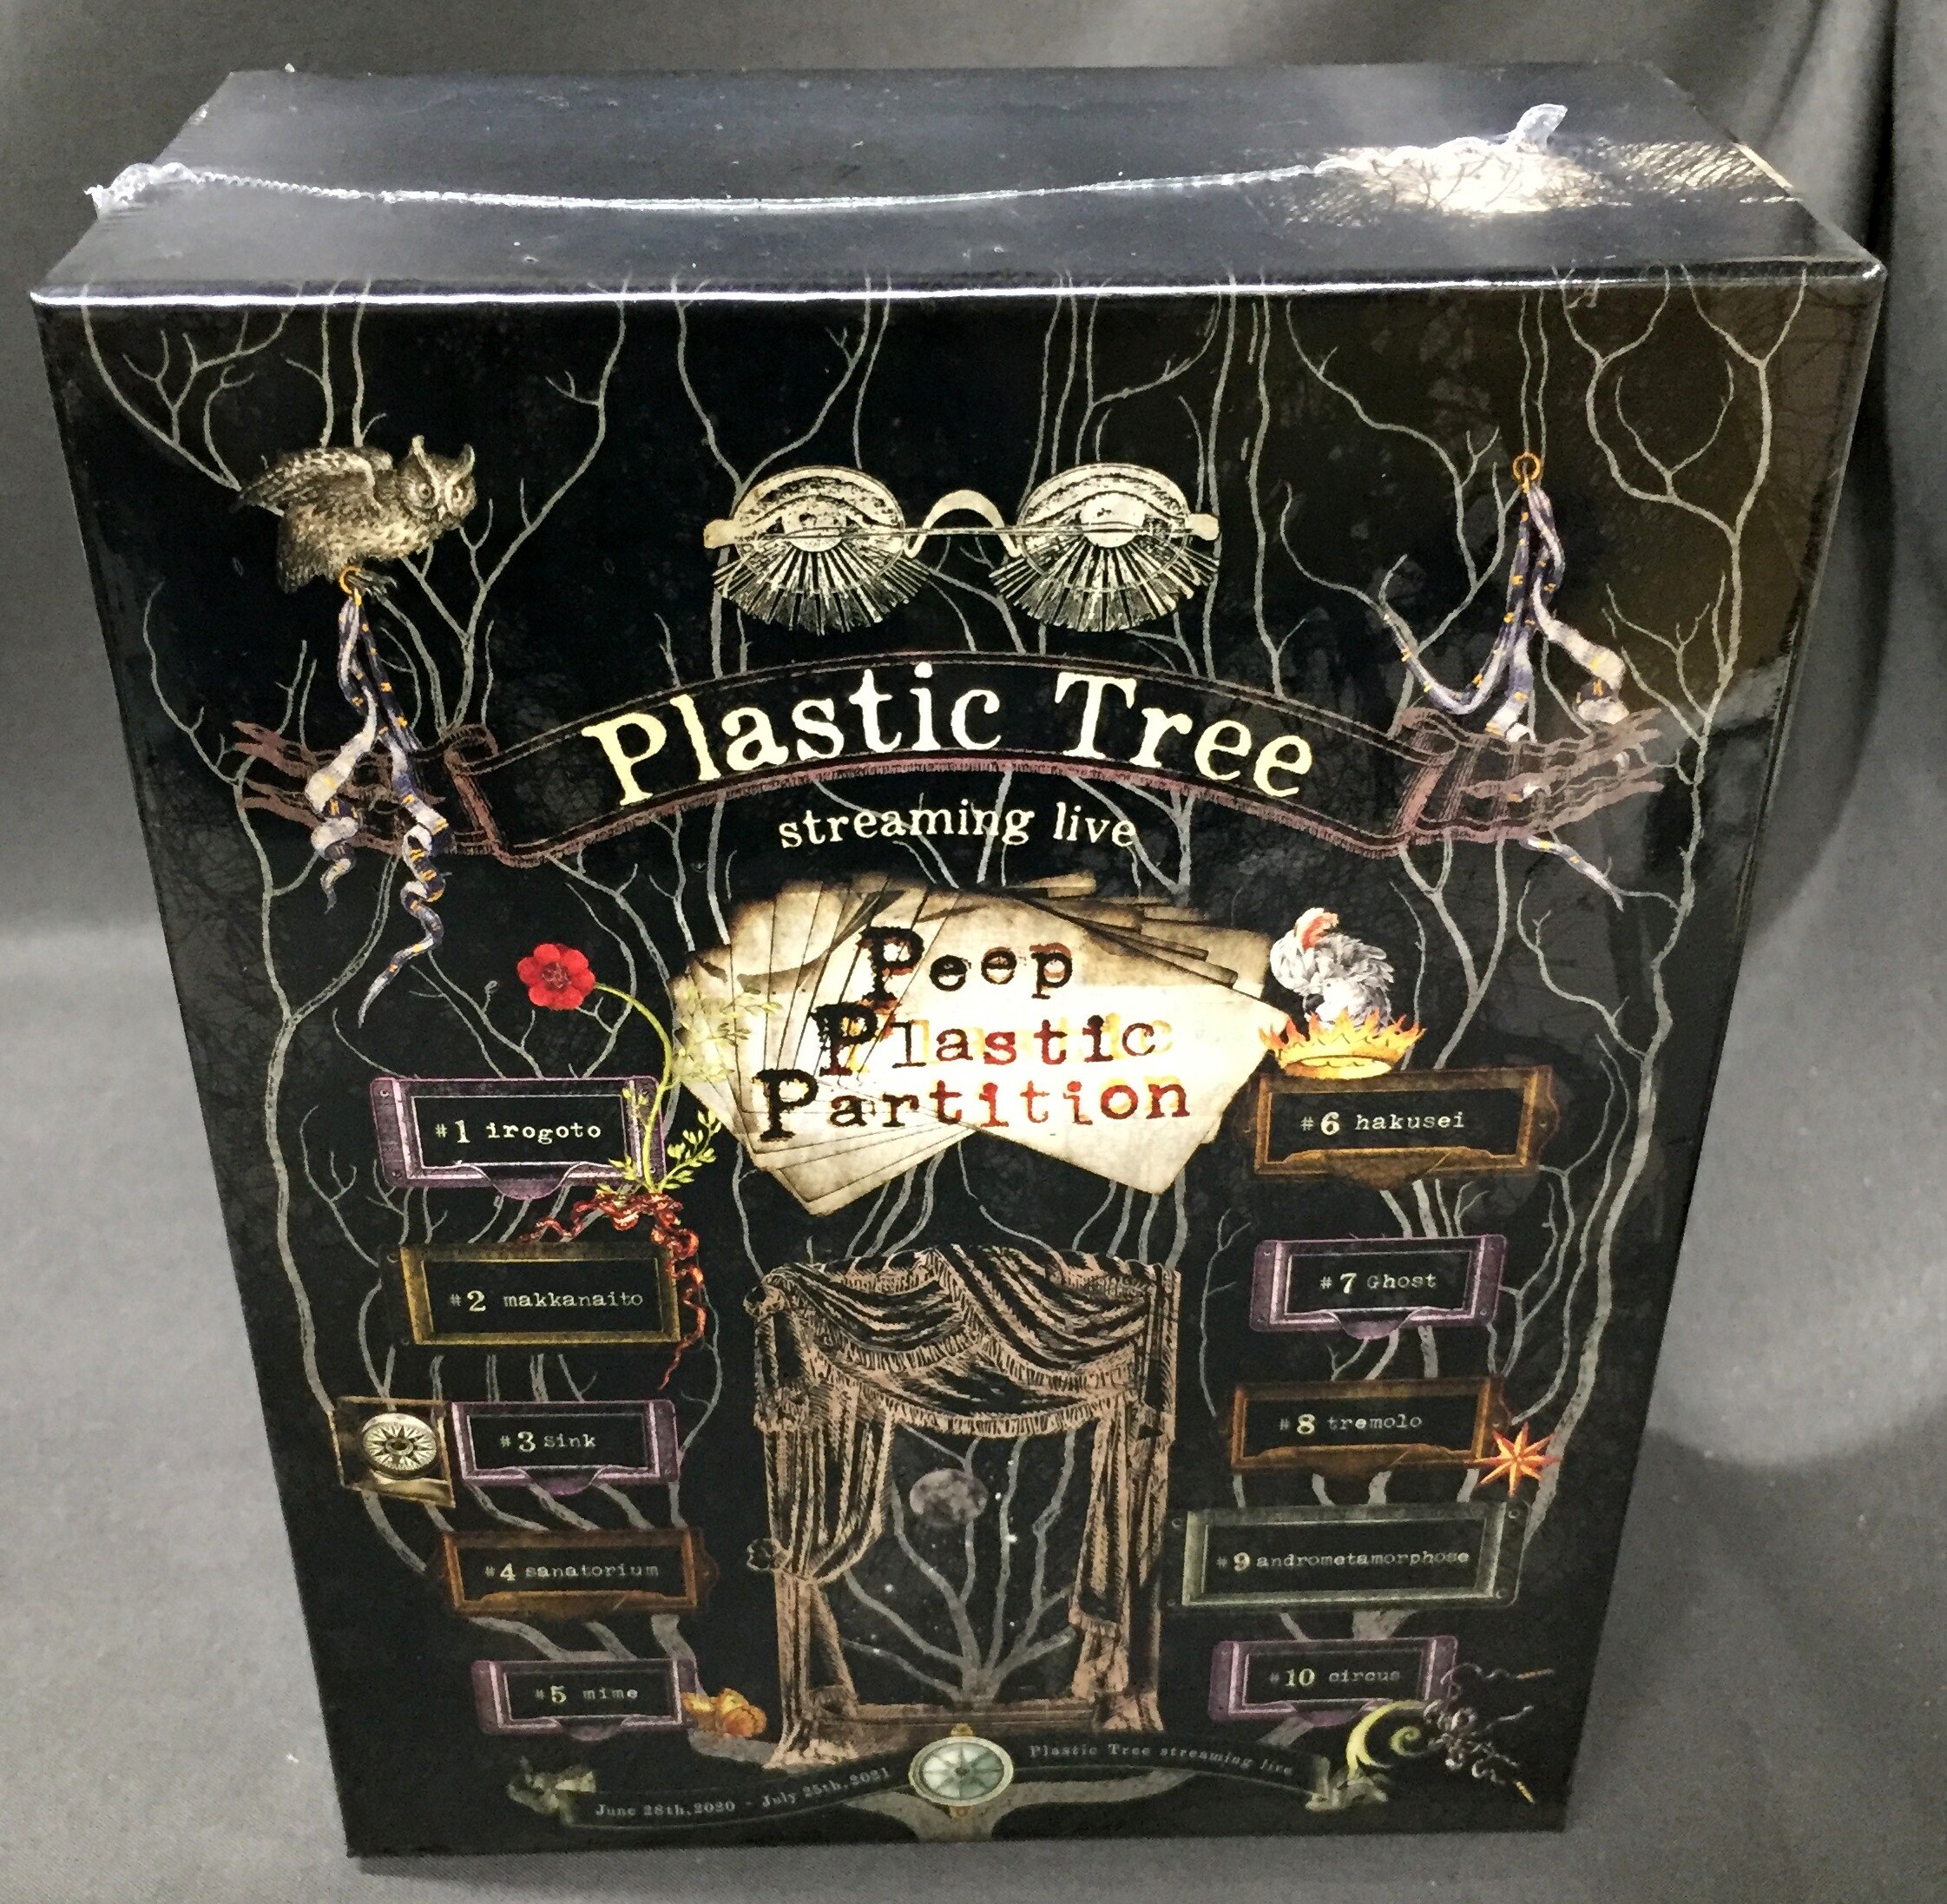 未開封】 Plastic Tree Blu-ray Box Peep Plastic Partition | あり